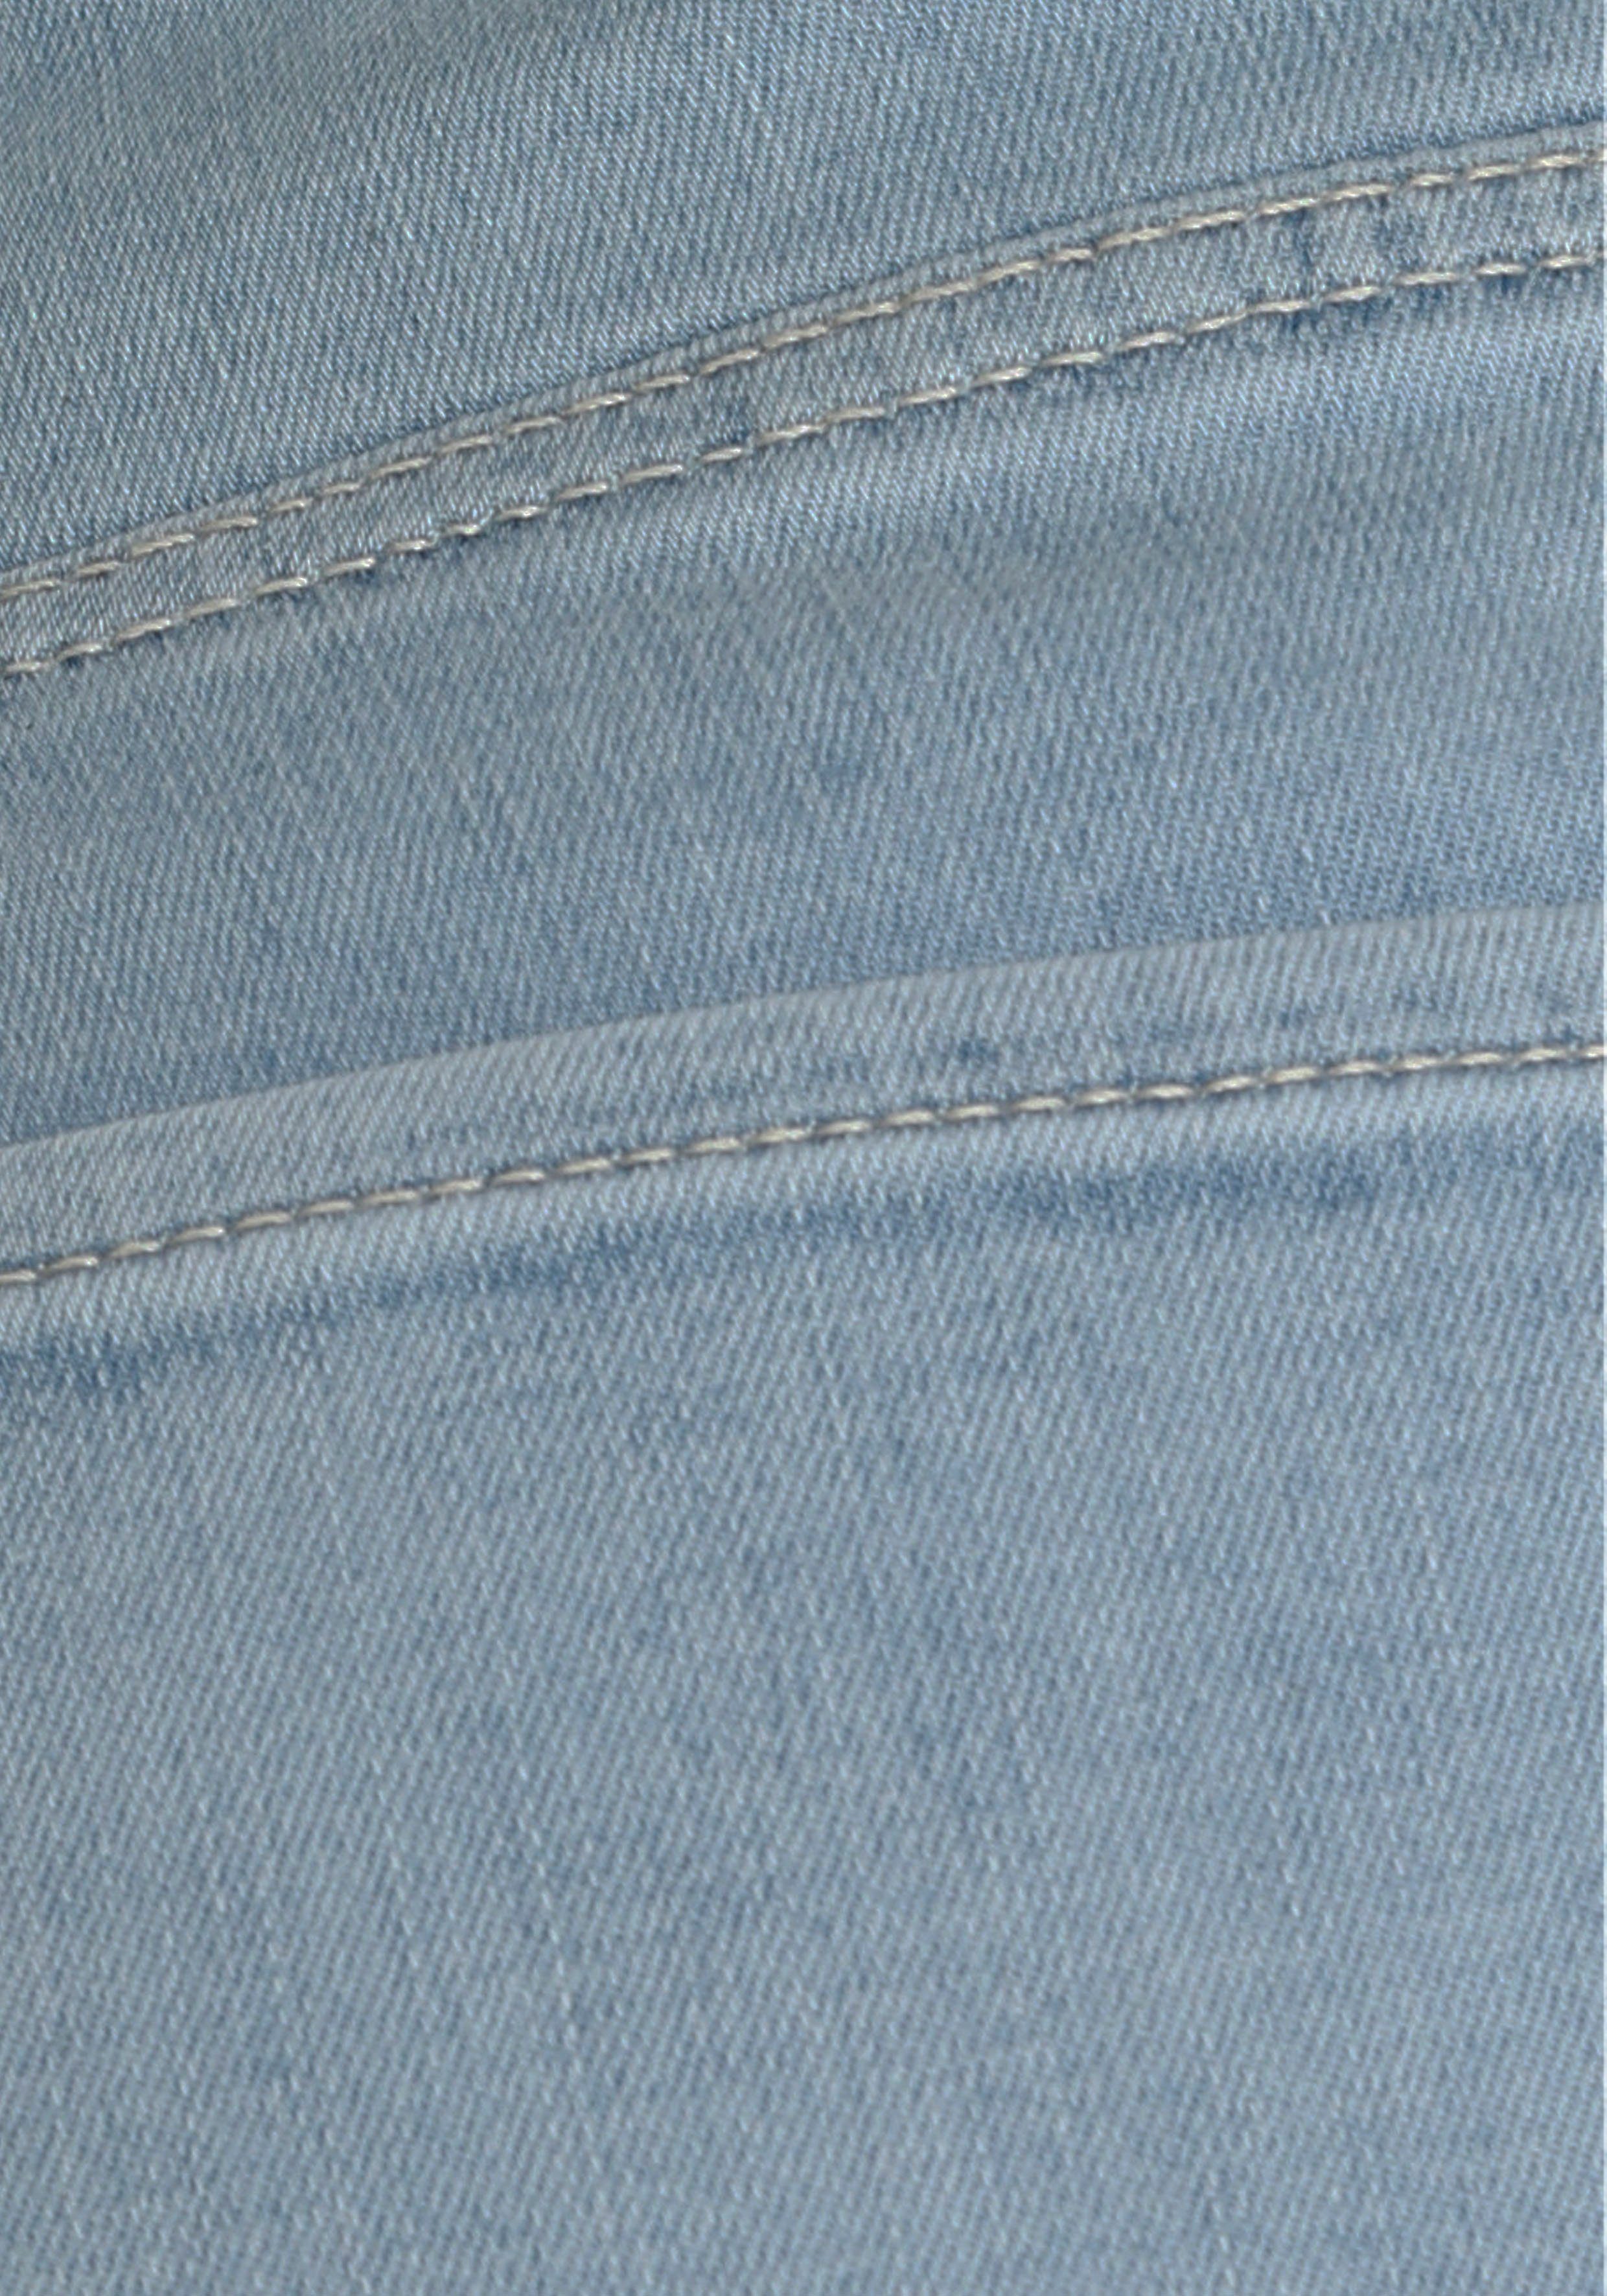 Kick blue light MAC 3/4-Jeans leicht modisch Dream verkürzt und ausgestellt Saum bleached